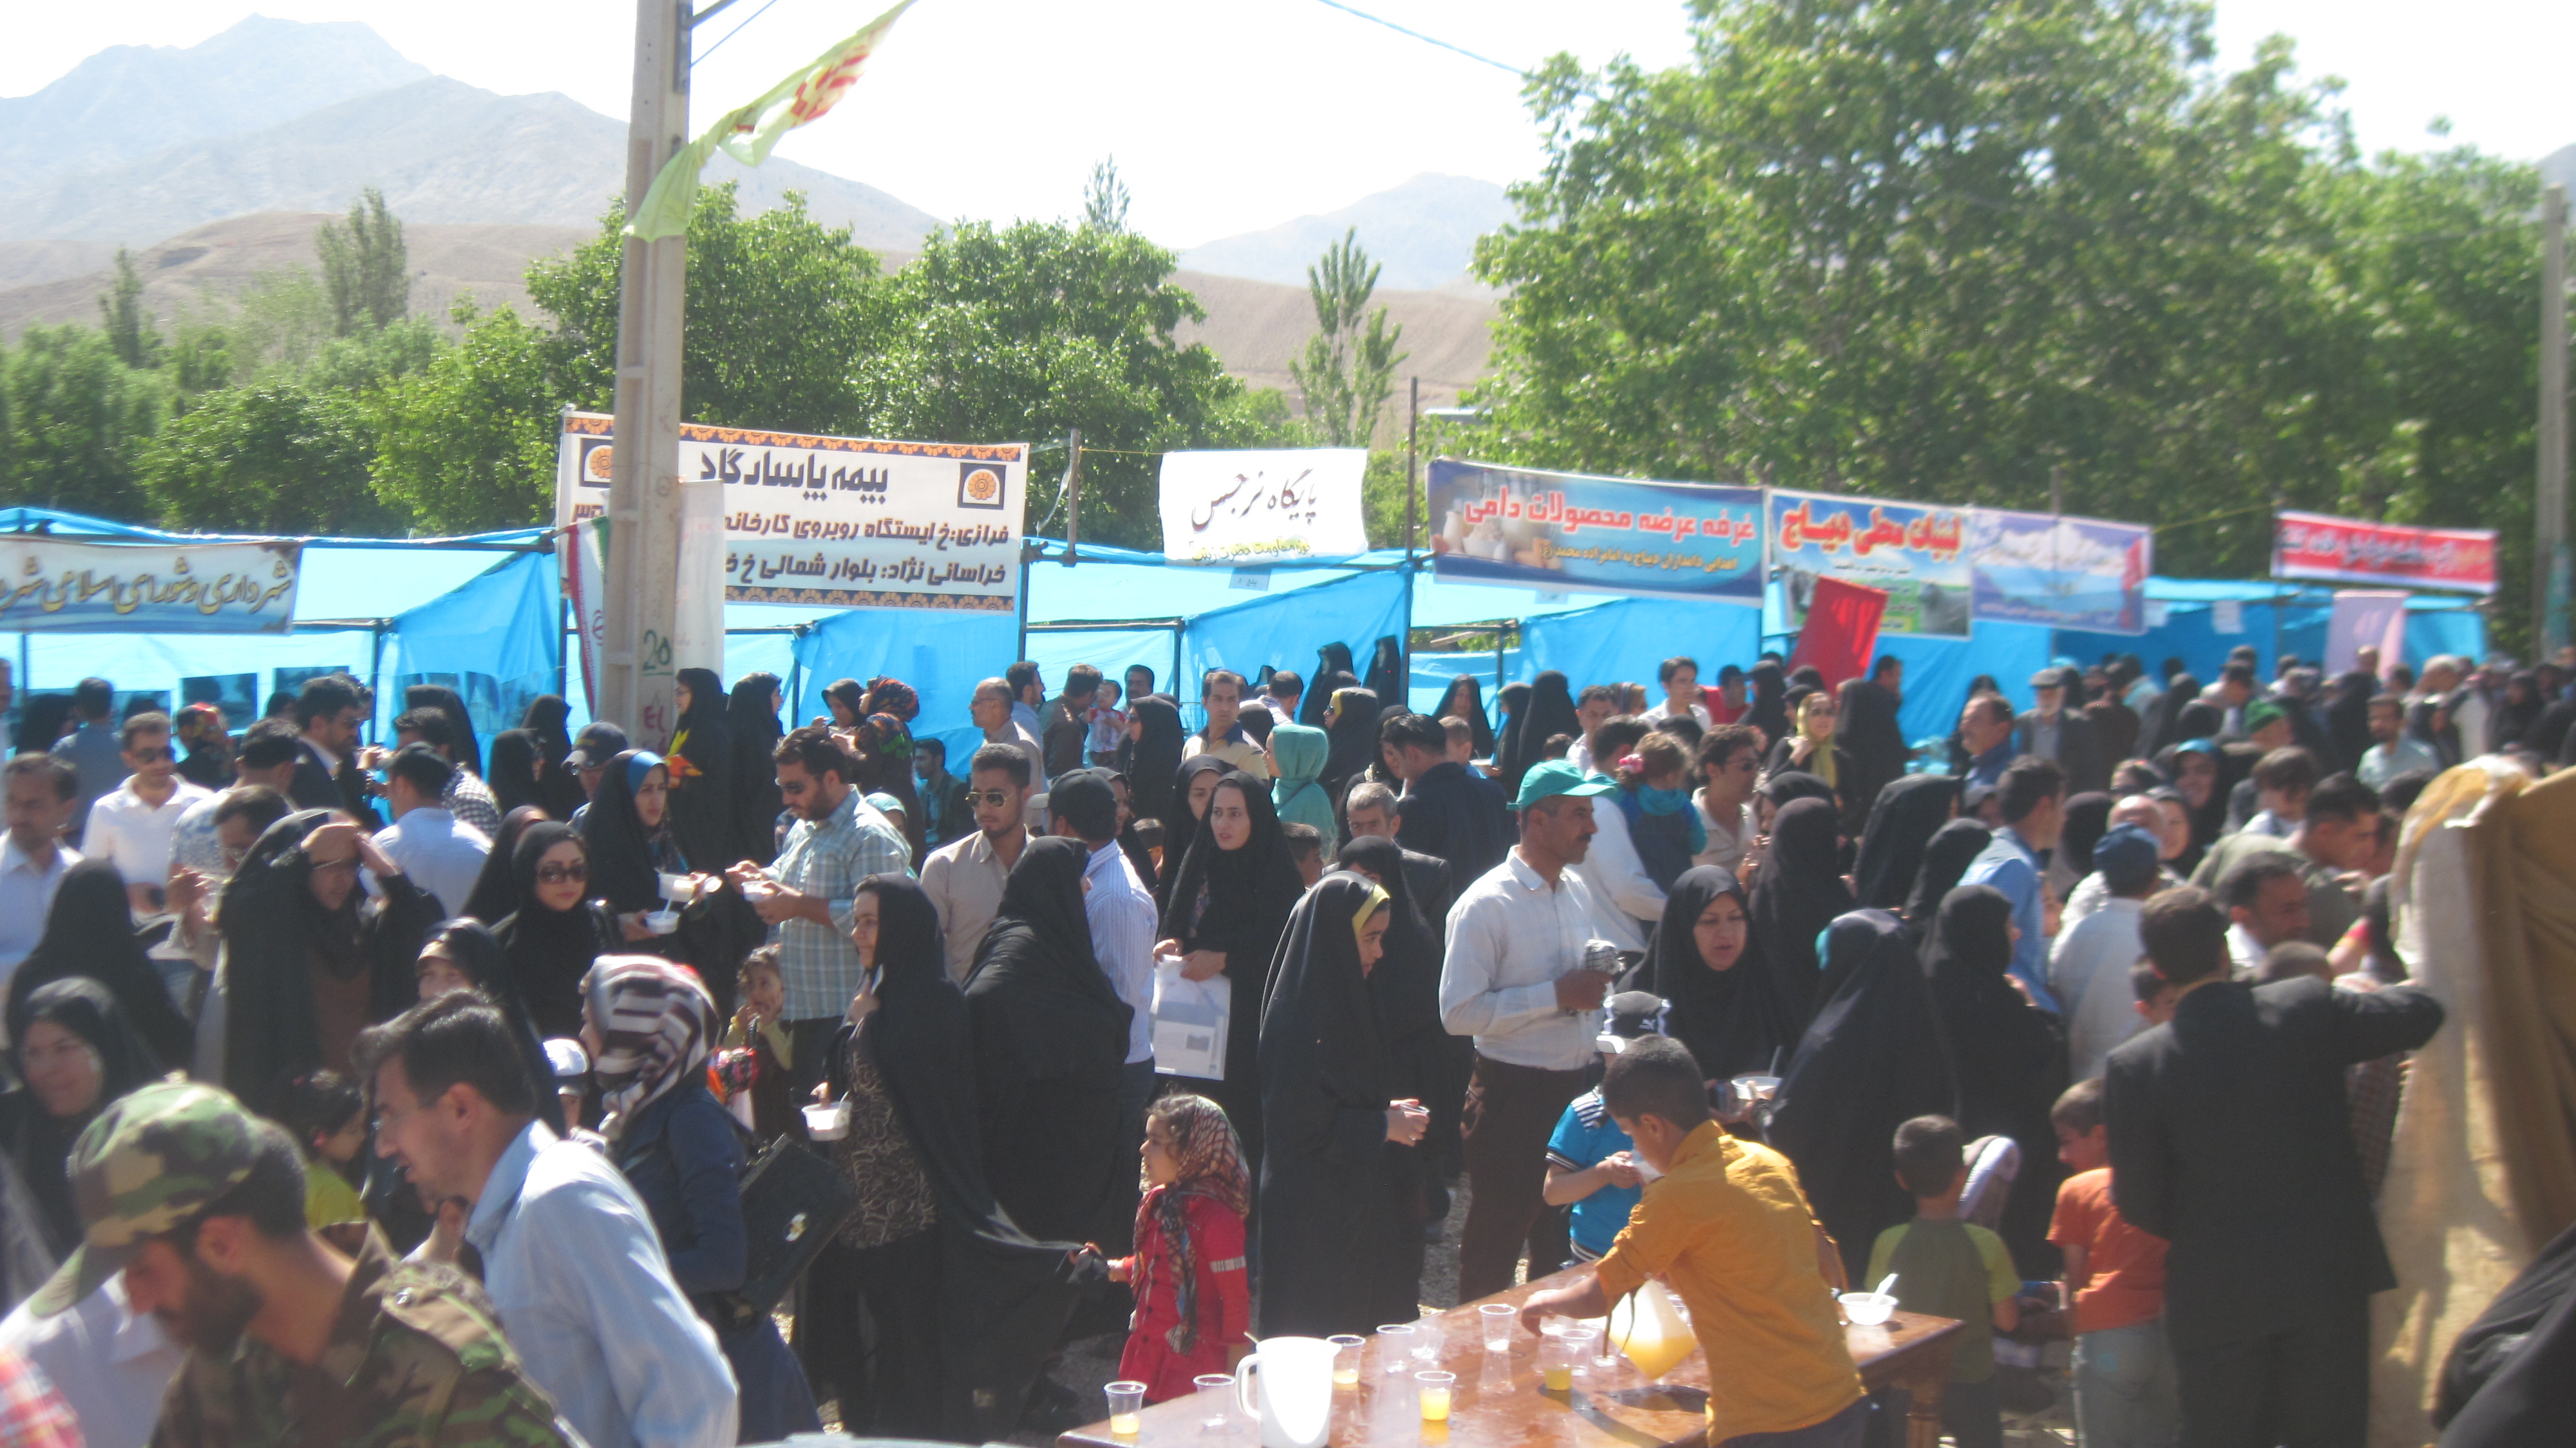 دومین جشنواره آئین امامدر(شیردوشان) شهر دیباج